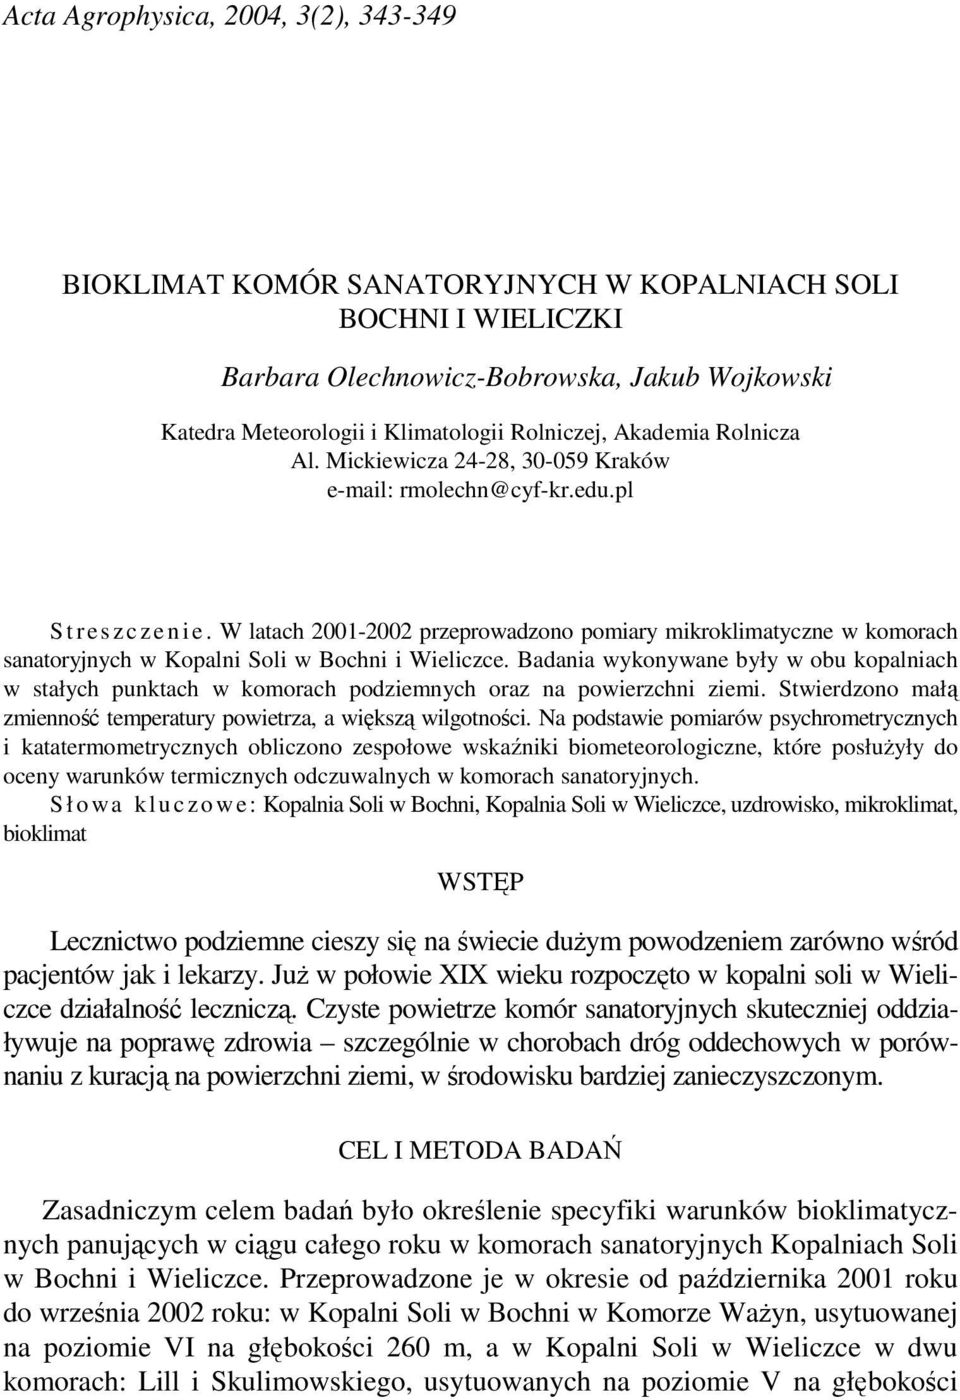 W latach 2001-2002 przeprowadzono pomiary mikroklimatyczne w komorach sanatoryjnych w Kopalni Soli w Bochni i Wieliczce.